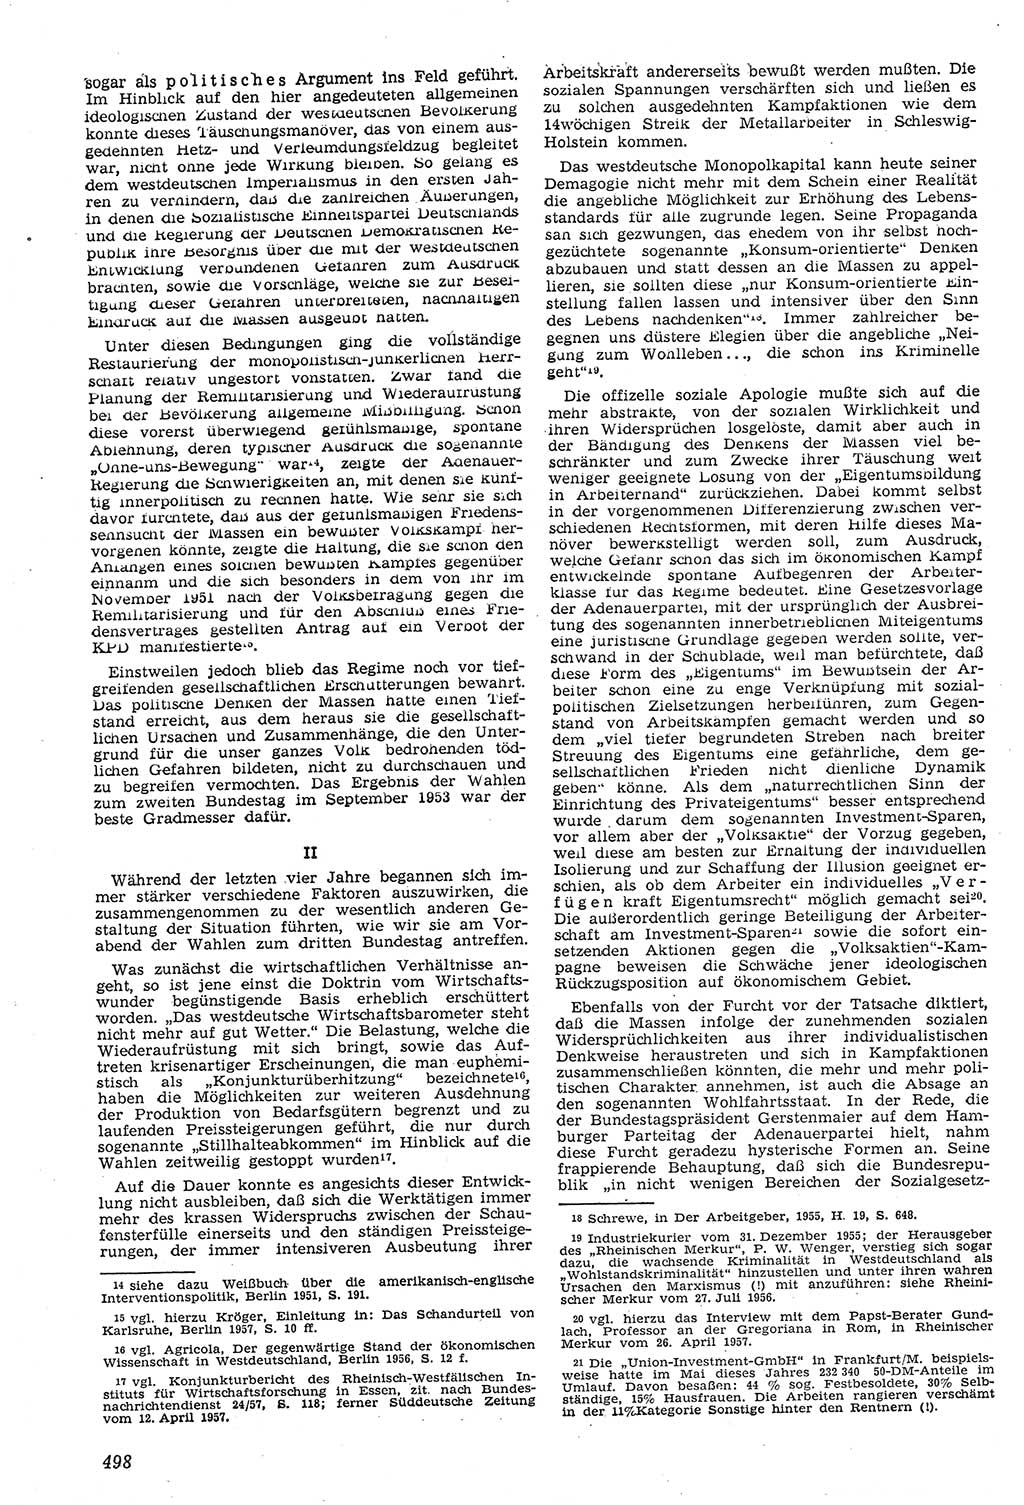 Neue Justiz (NJ), Zeitschrift für Recht und Rechtswissenschaft [Deutsche Demokratische Republik (DDR)], 11. Jahrgang 1957, Seite 498 (NJ DDR 1957, S. 498)